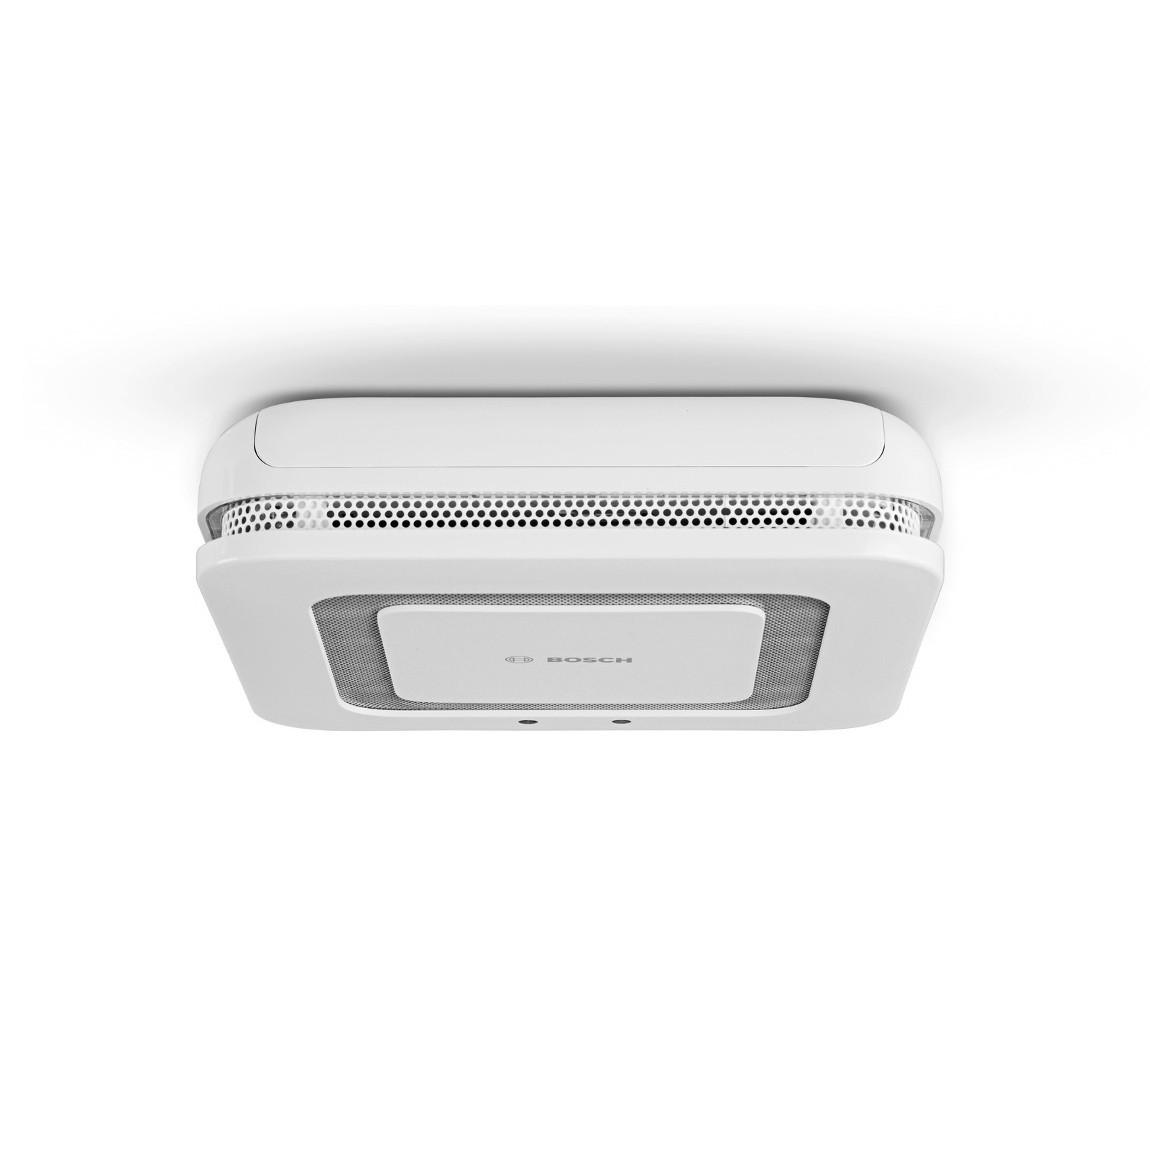 Bosch Smart Home Twinguard - Rauchwarnmelder mit Luftgütesensor - Weiß